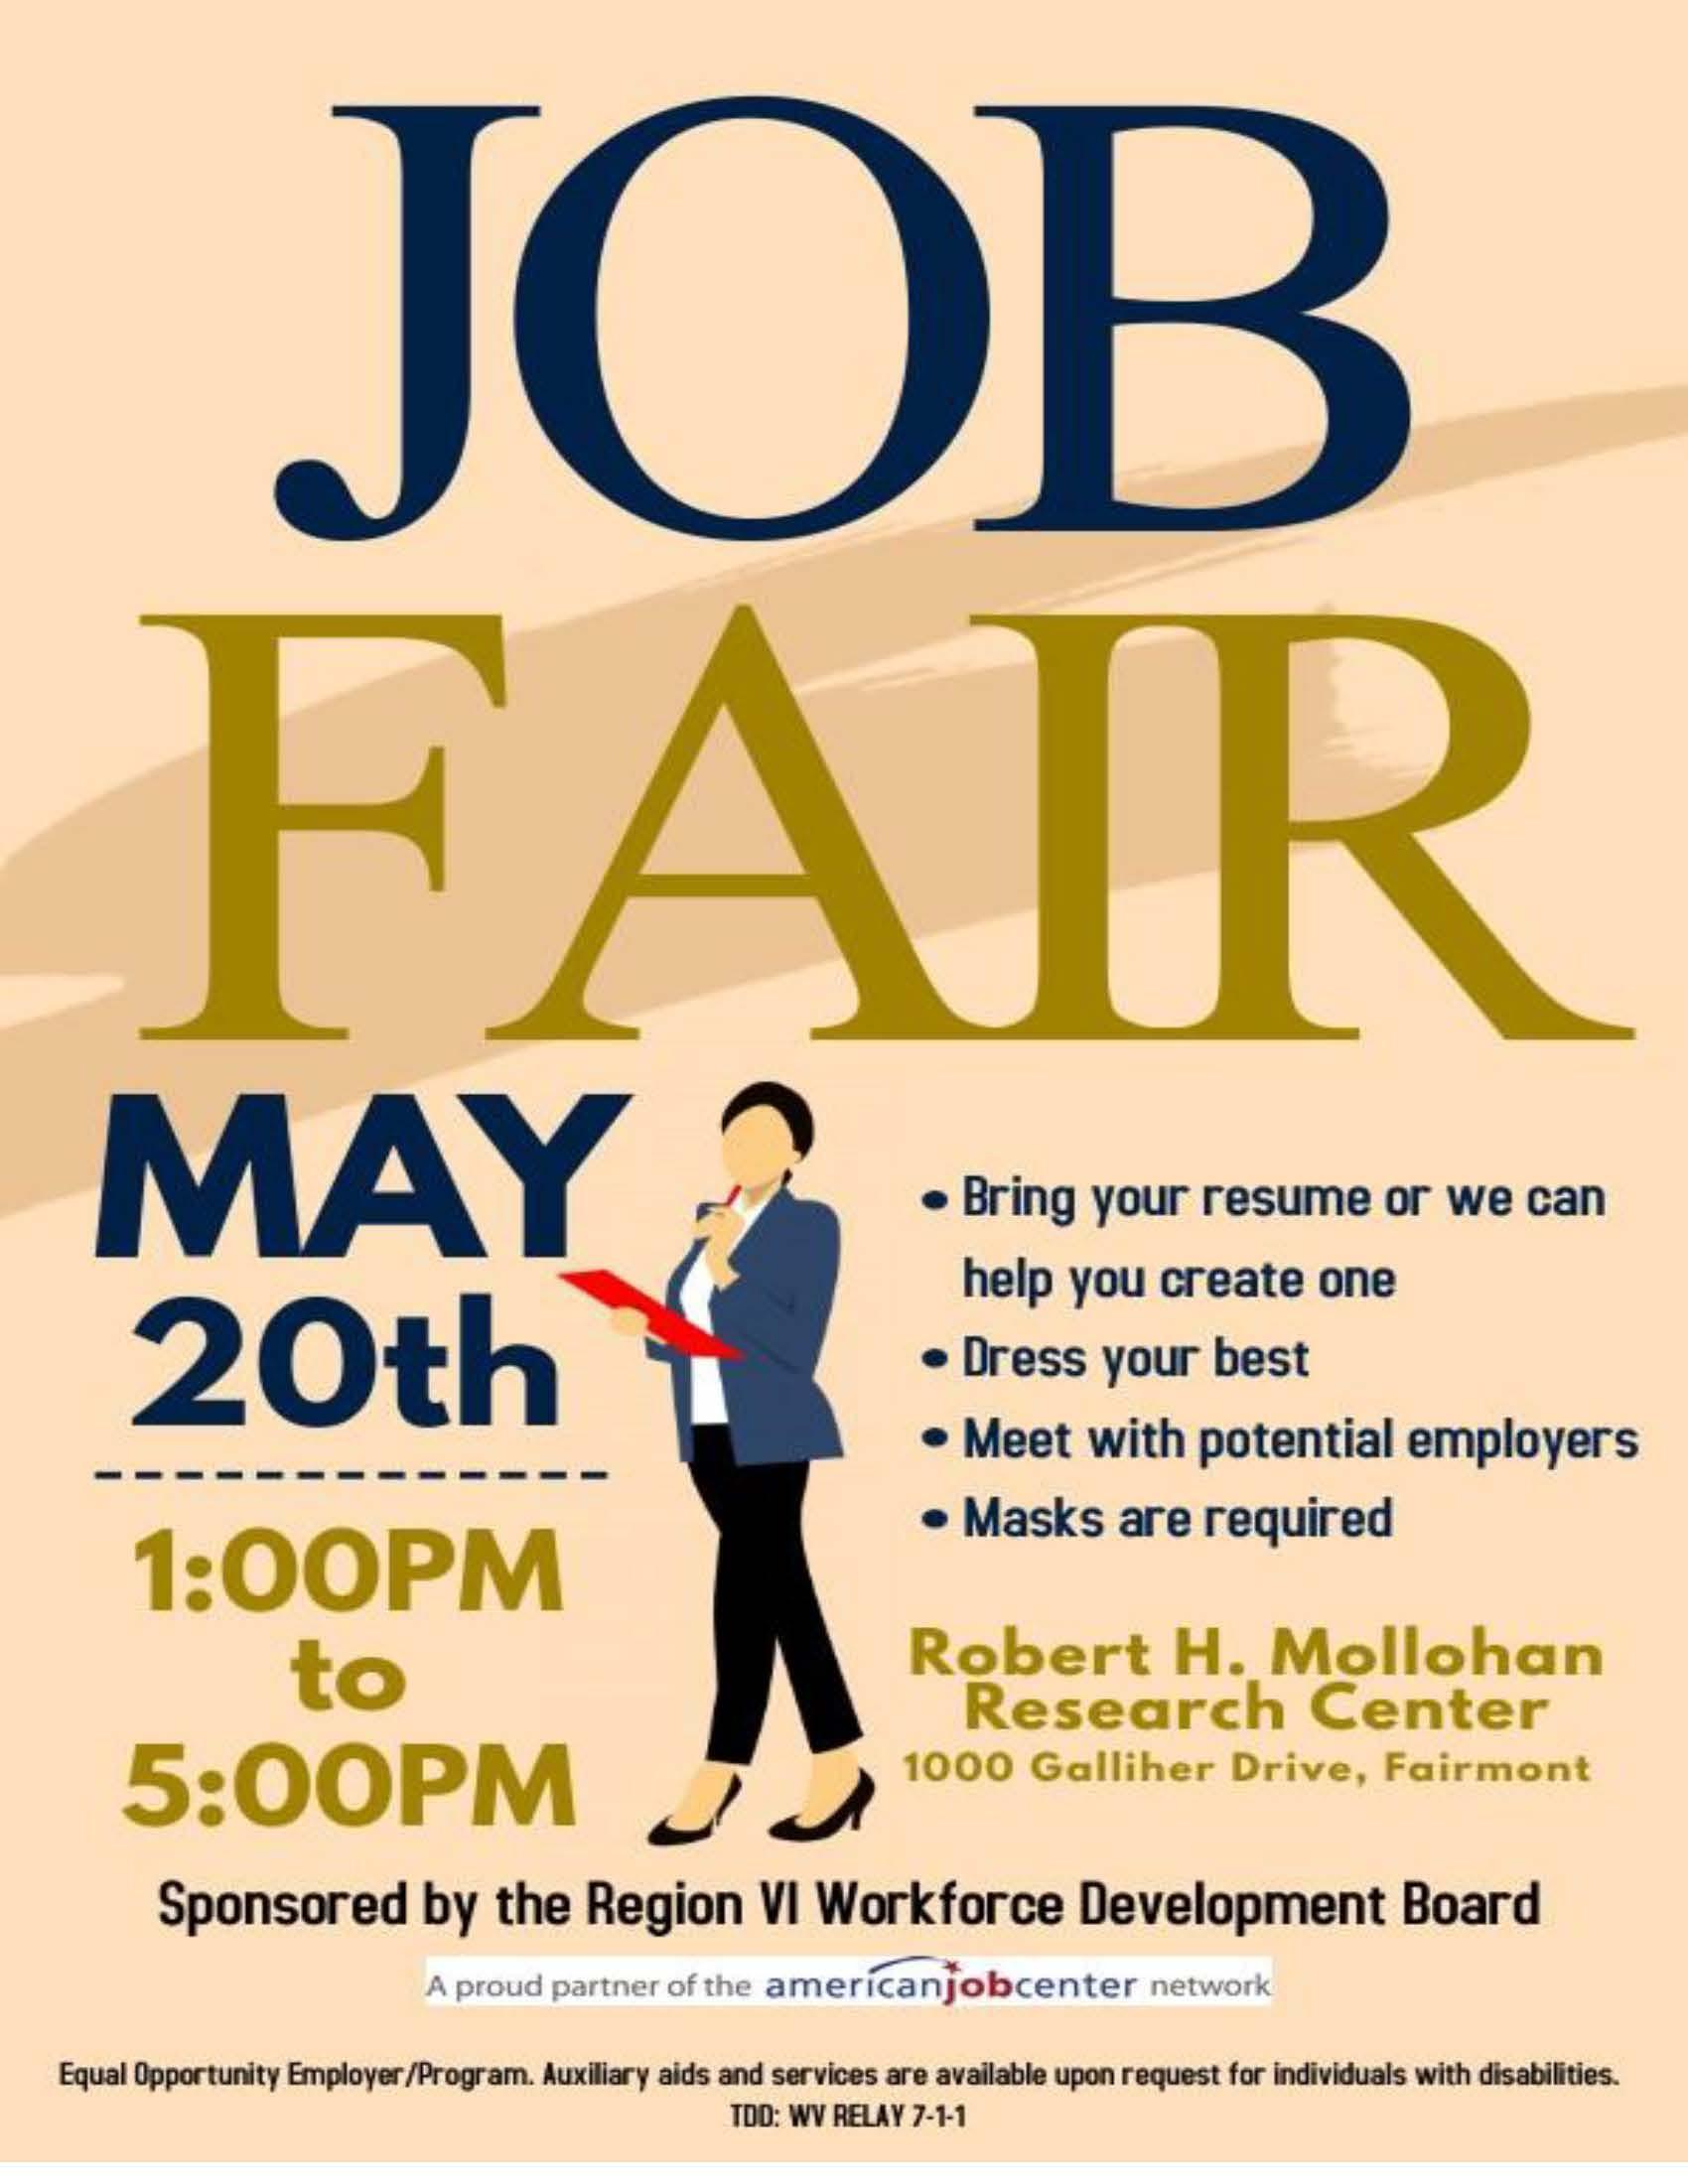 Job Fair May 20th